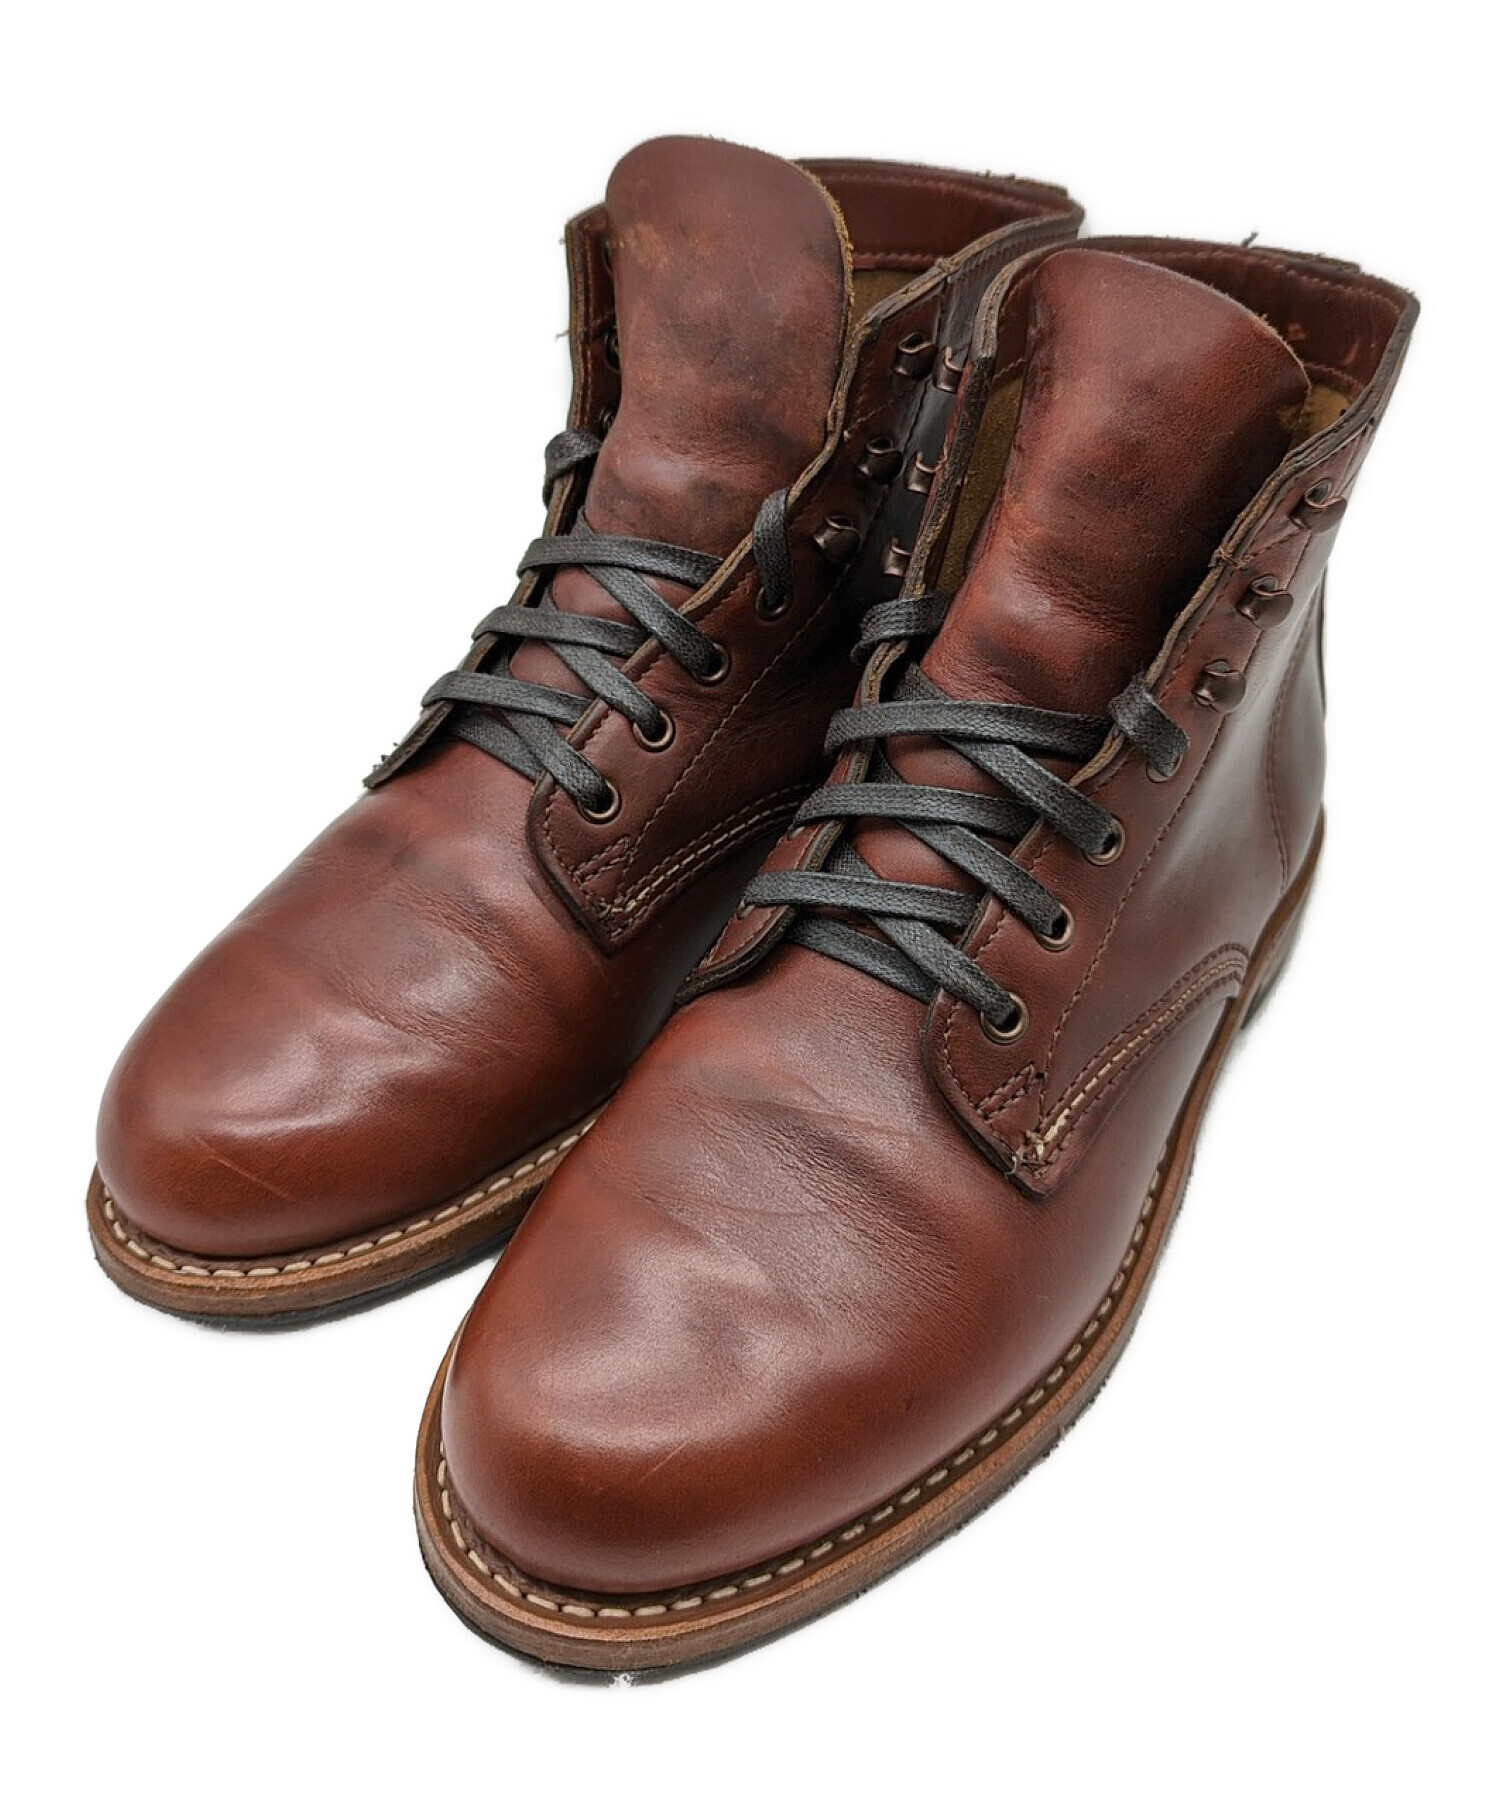 WOLVERINE (ウルヴァリン) 1000 MILE boots (1000マイル ブーツ) ブラウン サイズ:US 7.0